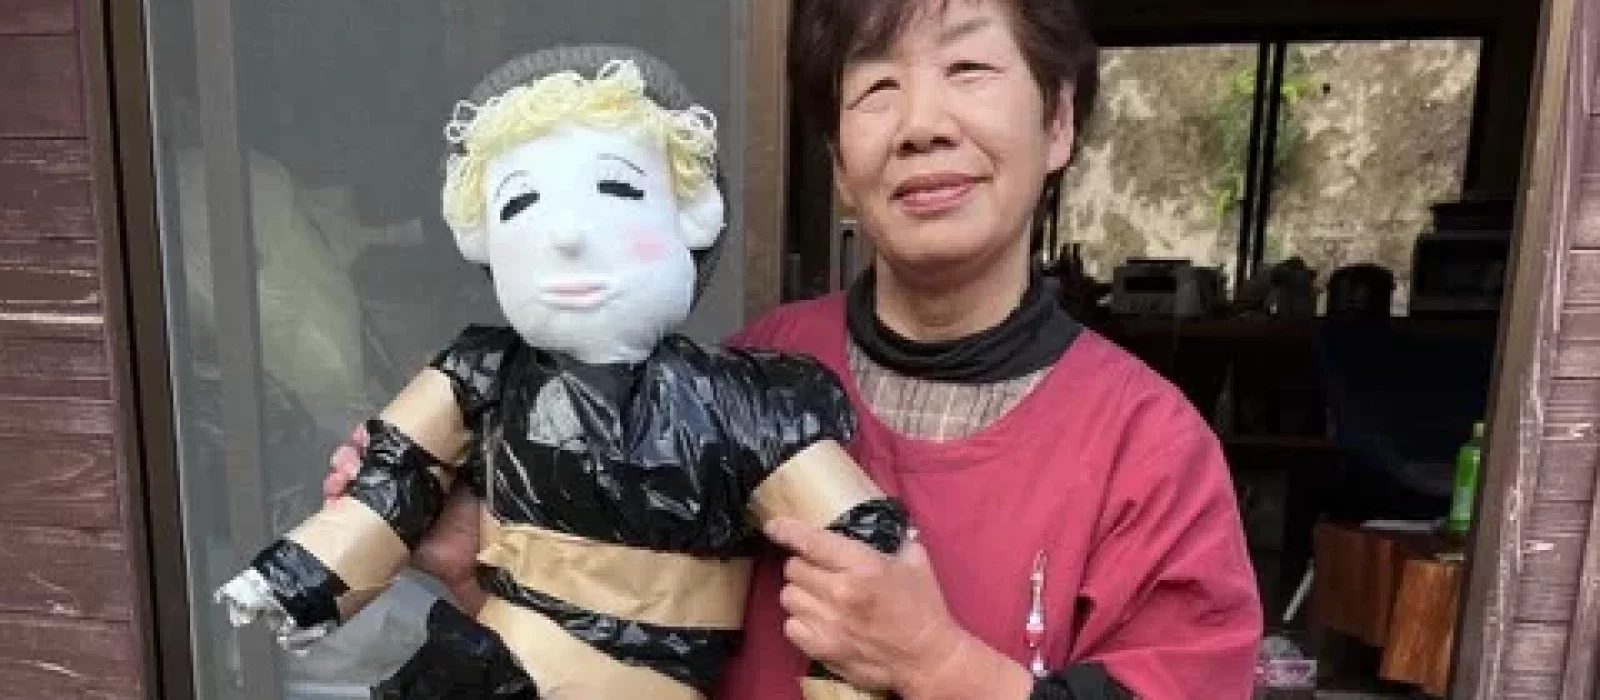 Ayano Tsukimi und eine neue Puppe, für die sie noch keinen Namen hat.